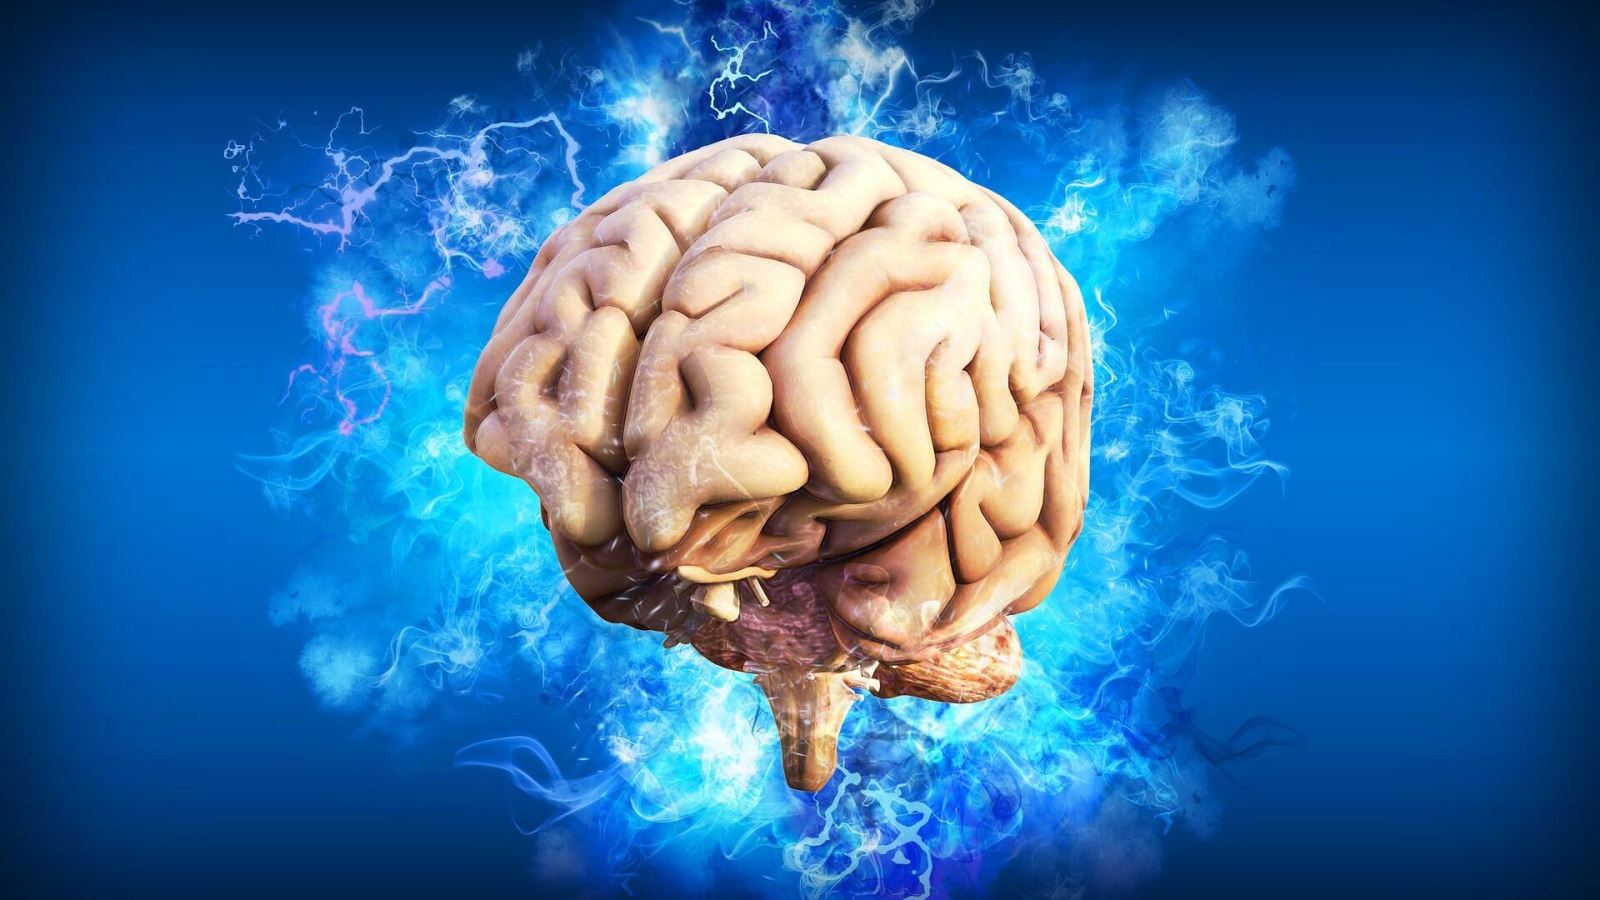 Các nhà khoa học Nga phát triển ‘bộ não mini’ để nghiên cứu nhận thức con người